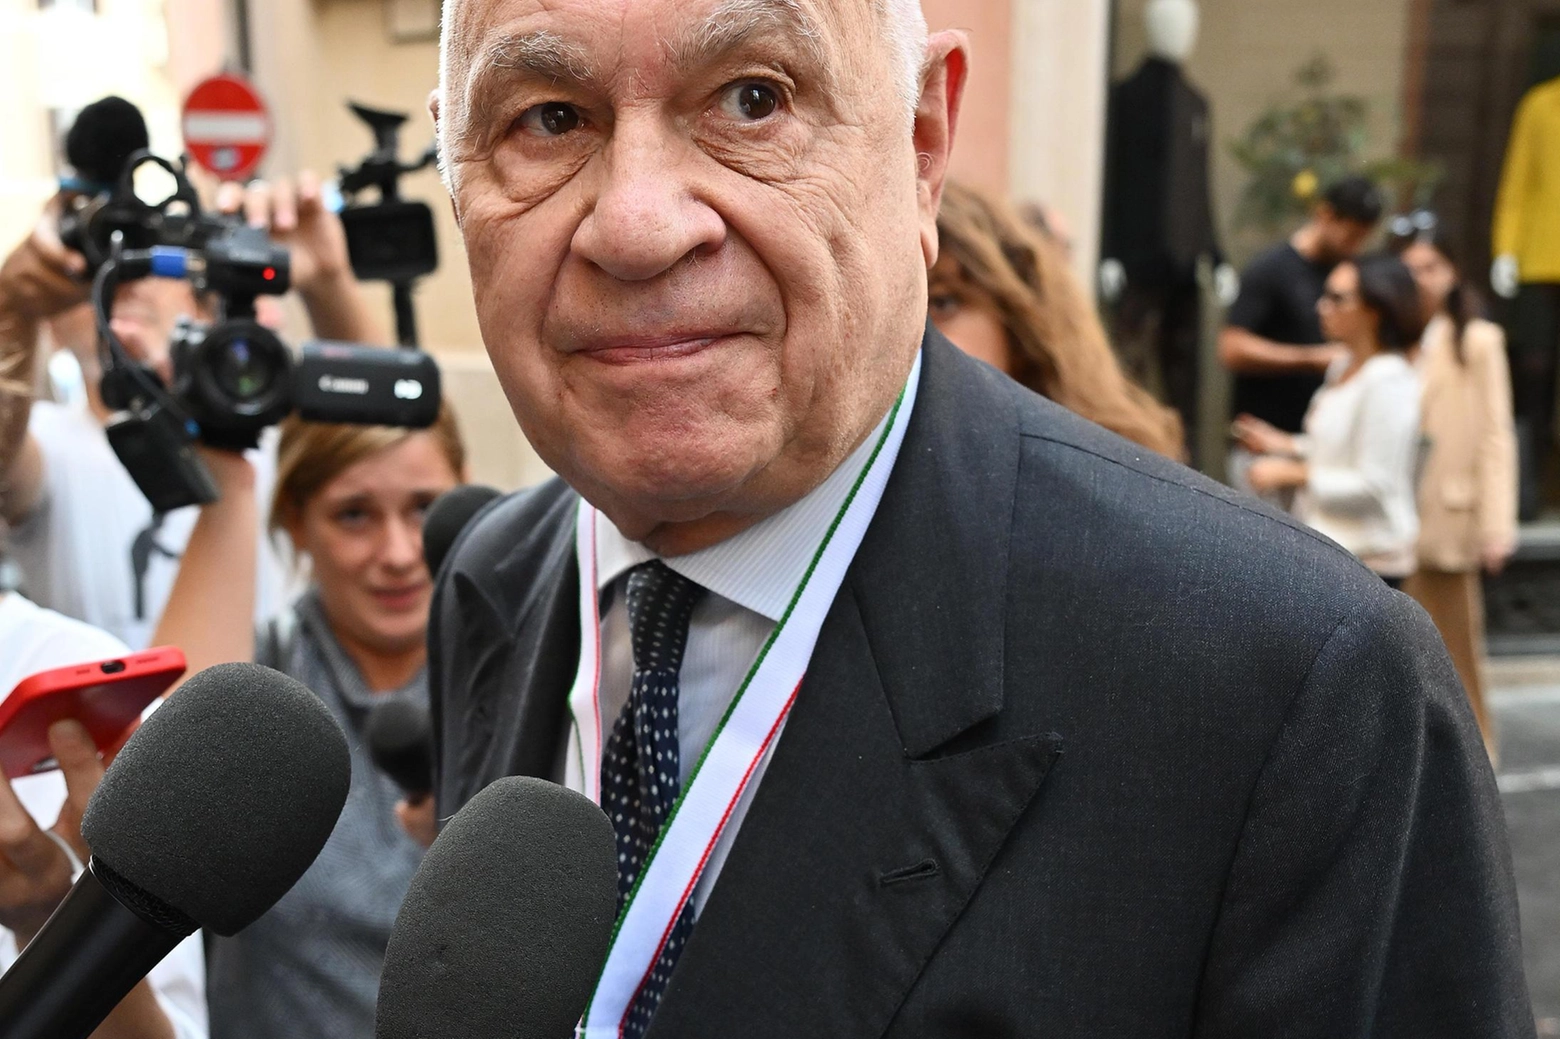 Dal 22 ottobre 2022 Carlo Nordio, 75 anni, ricopre la carica di ministro della Giustizia